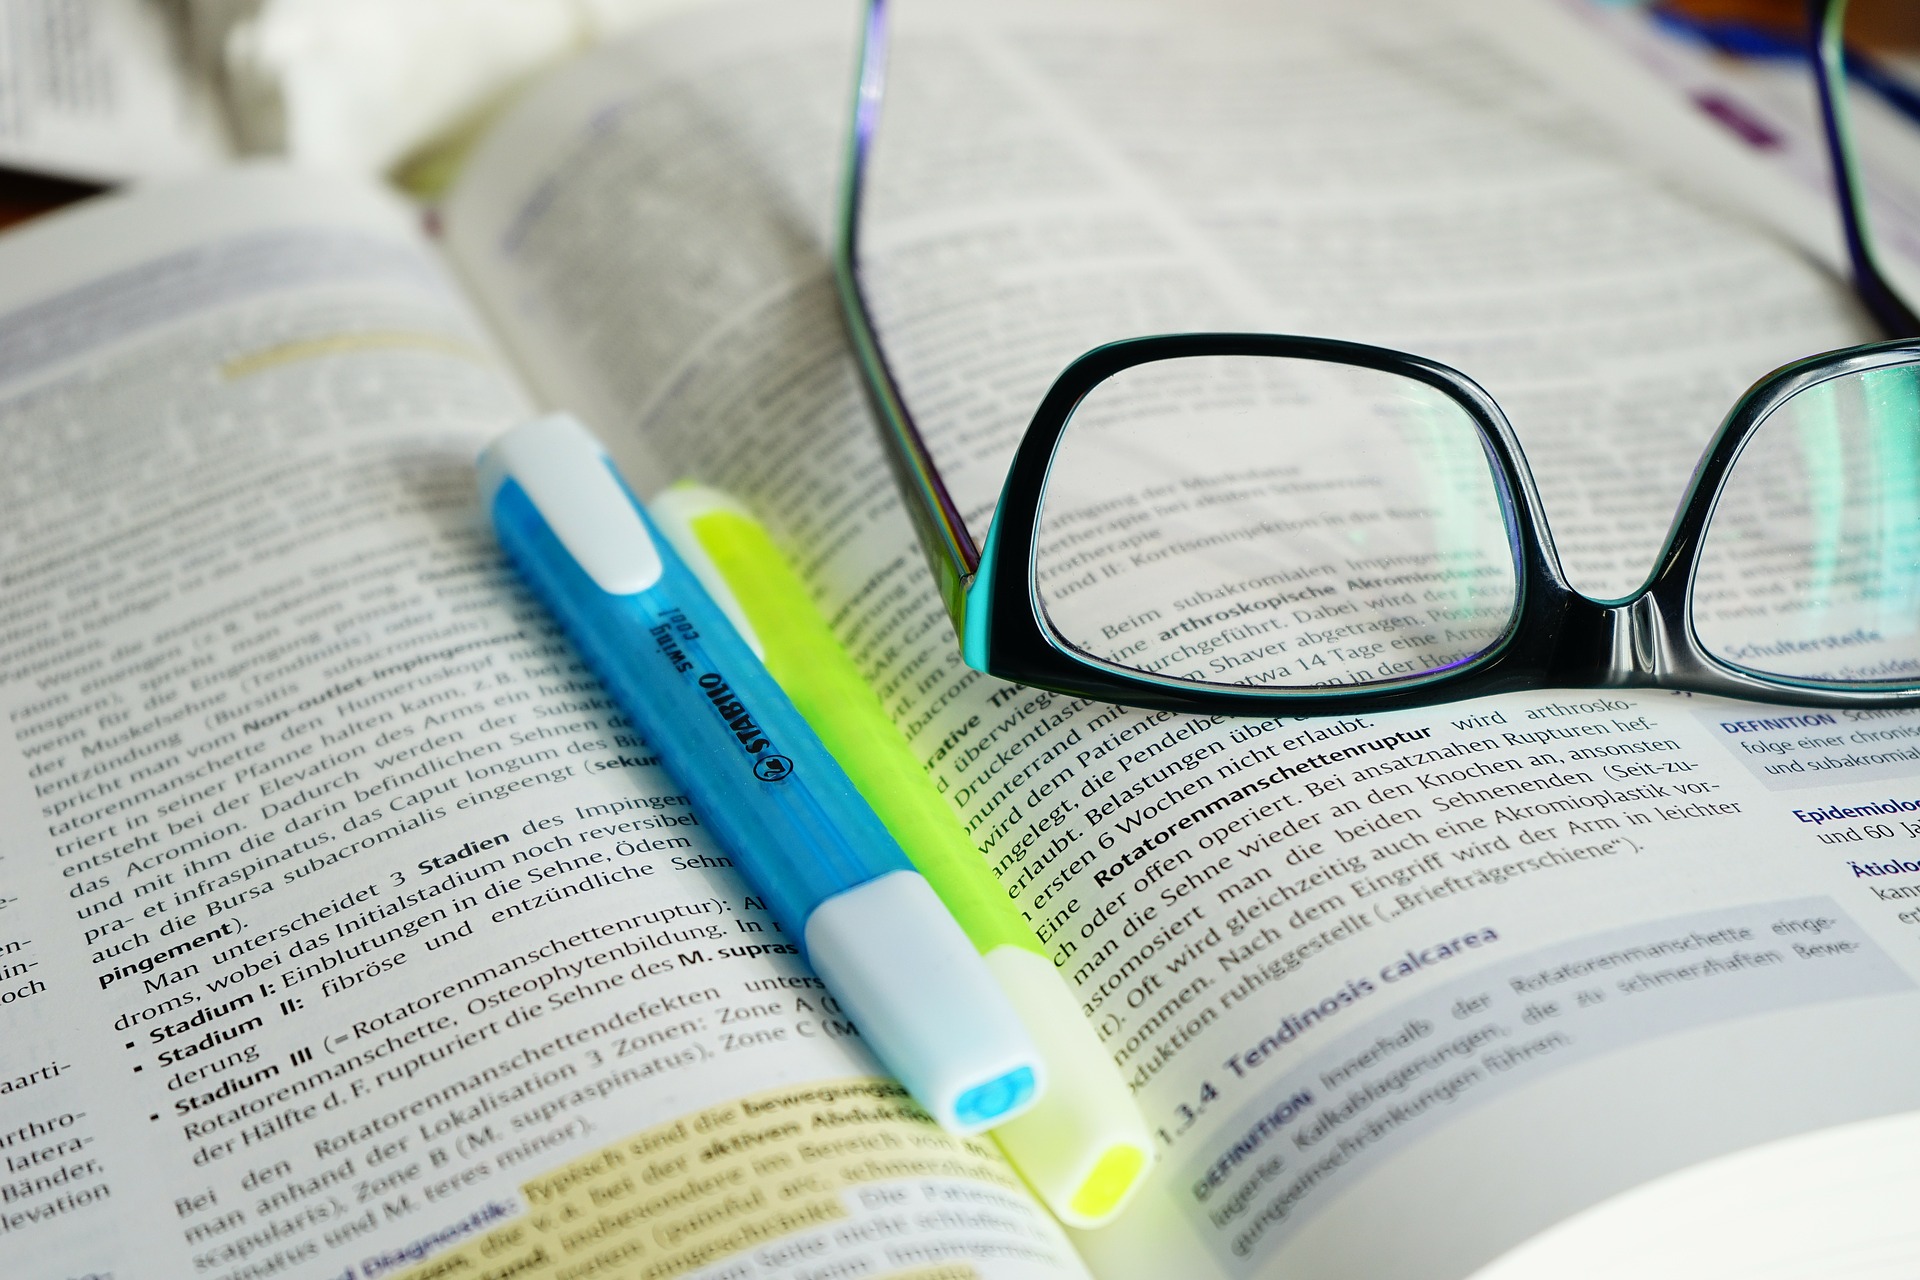 Un libro académico abierto a una página con resaltado. Encima del libro hay dos resaltadores y un par de gafas.